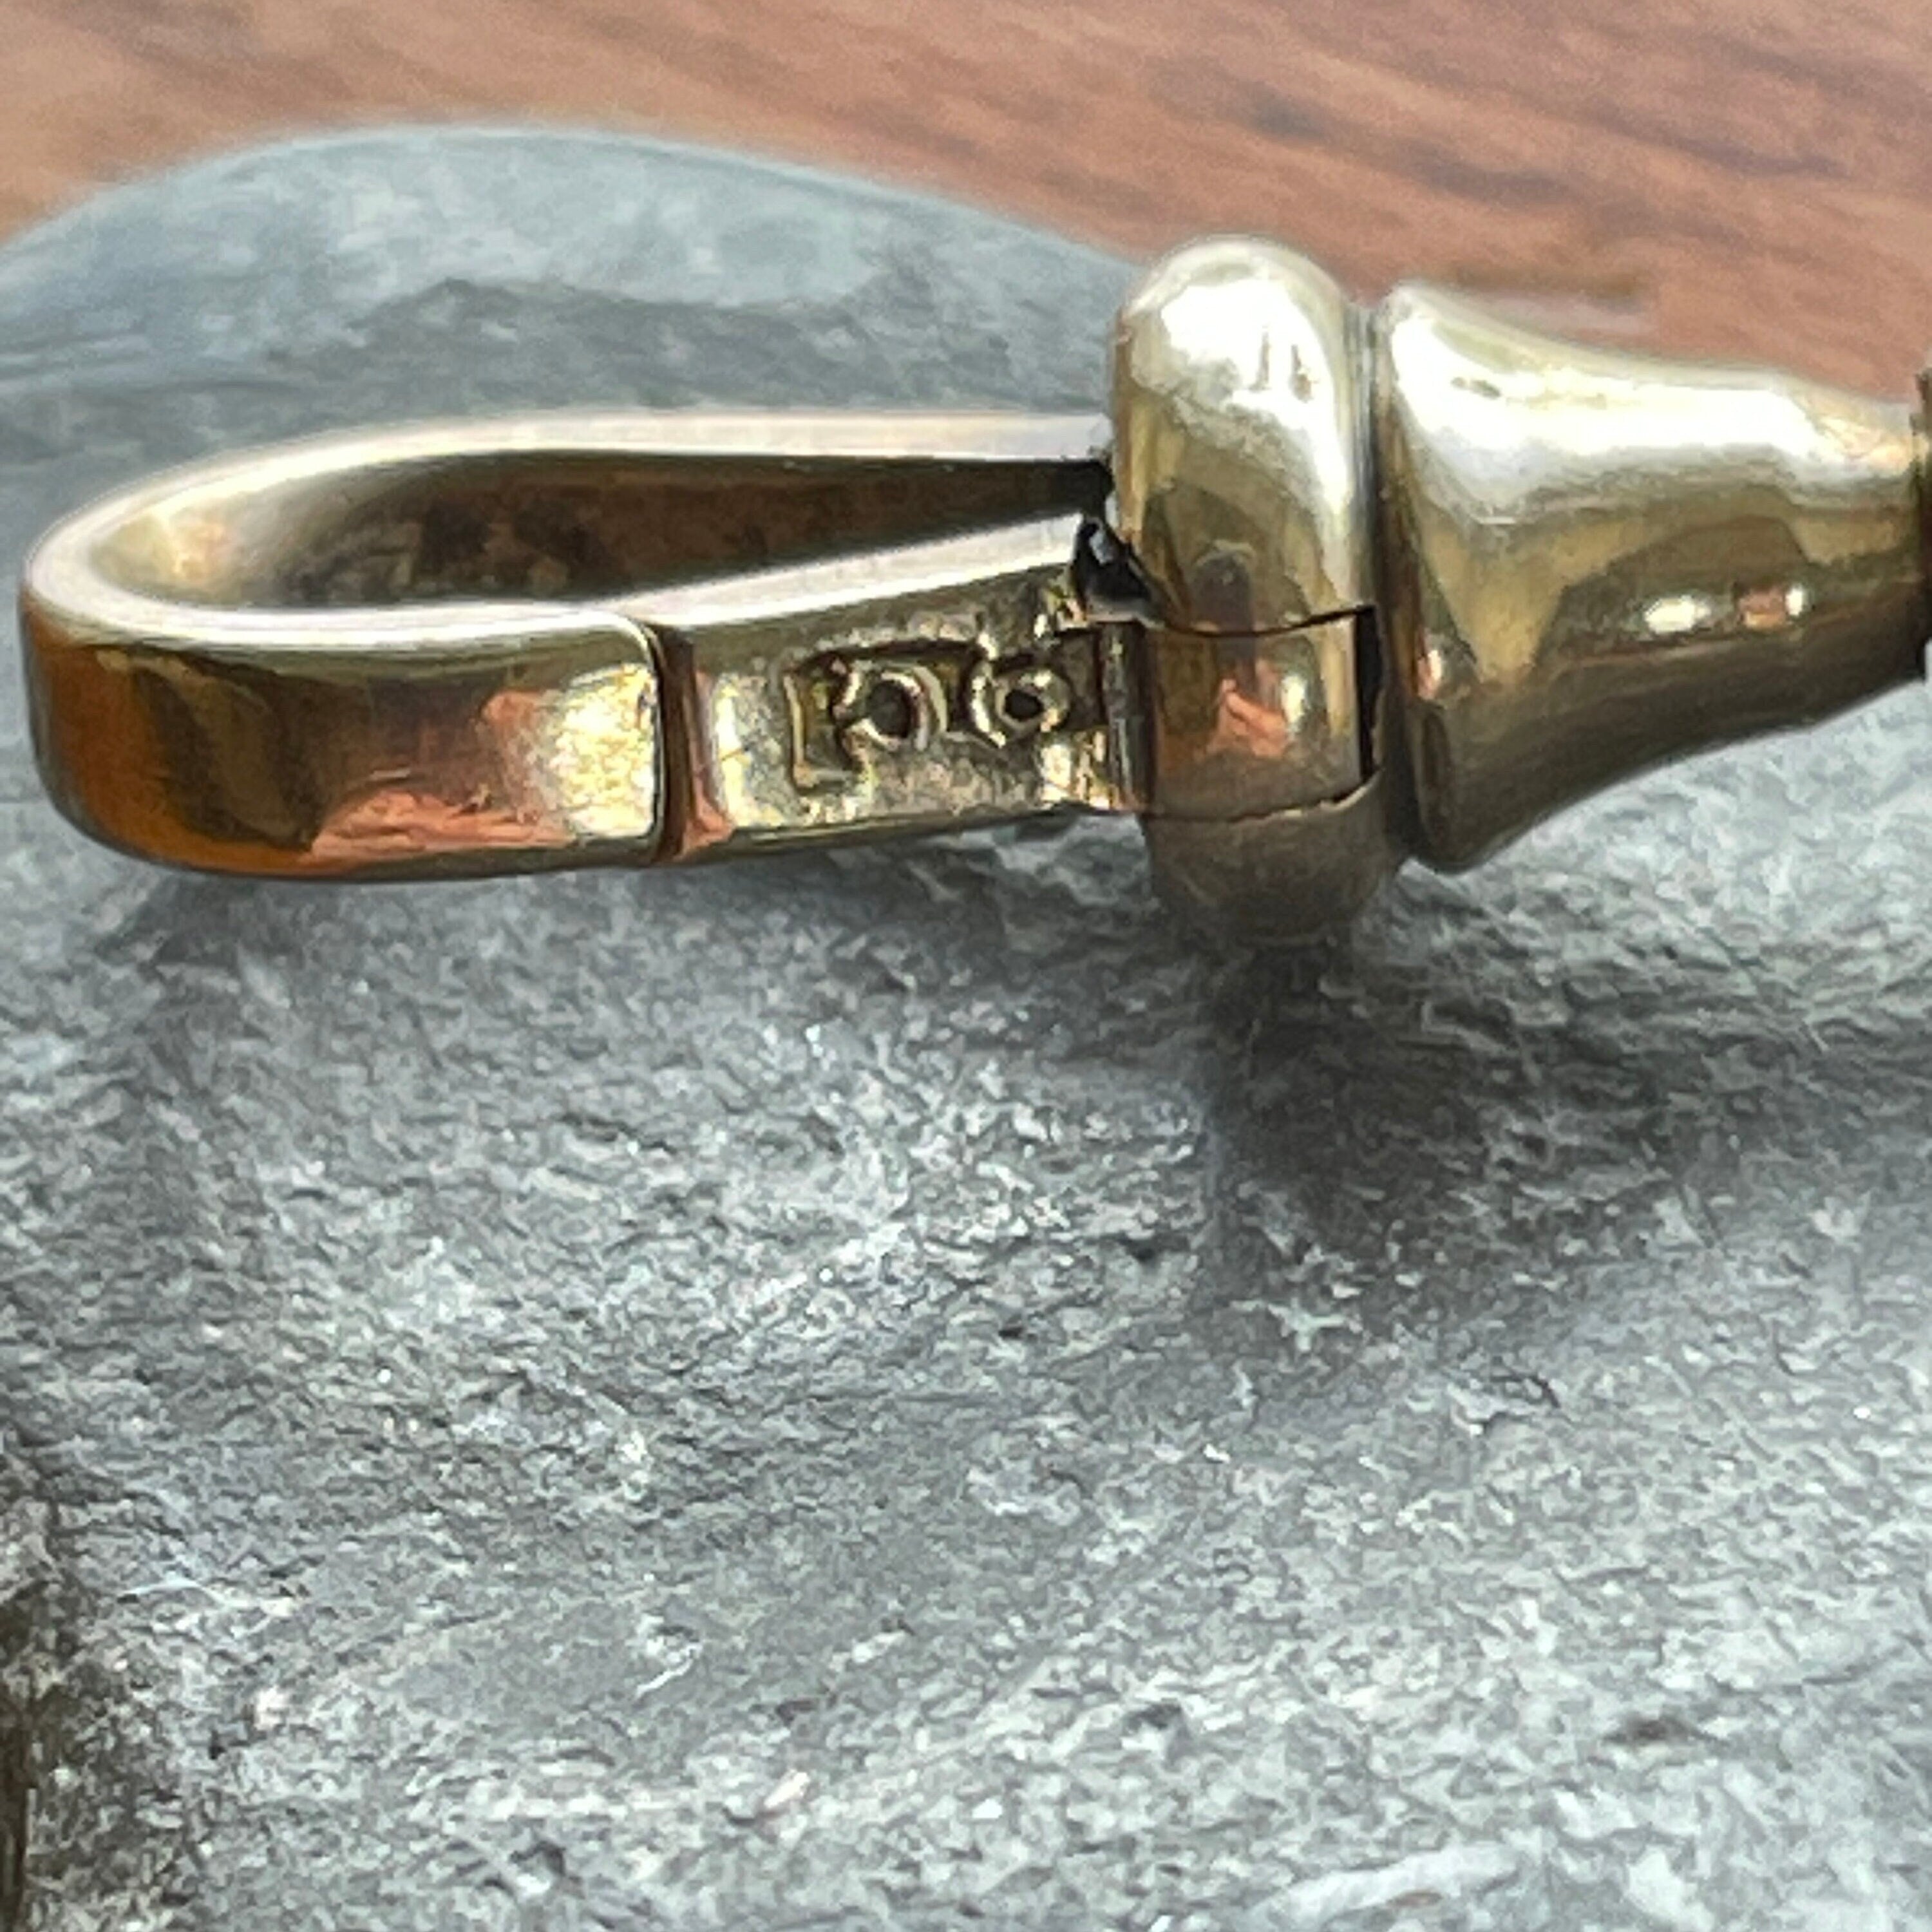 Antique 9ct gold, dog clip, pendant, charm